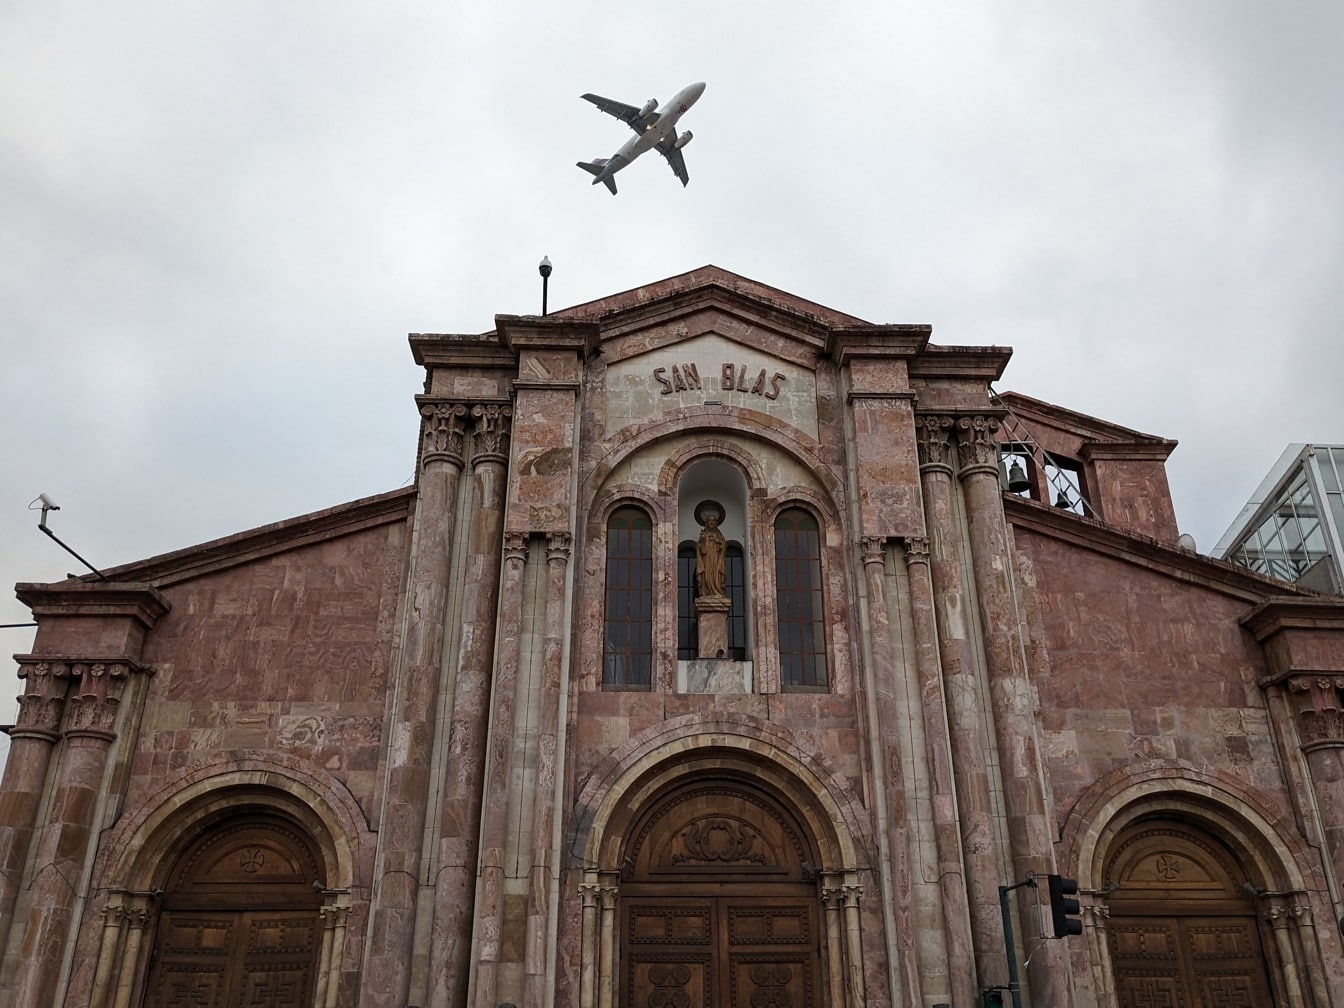 Un avión sobrevolando una iglesia católica de San Blas en la ciudad de Cuenca en Ecuador